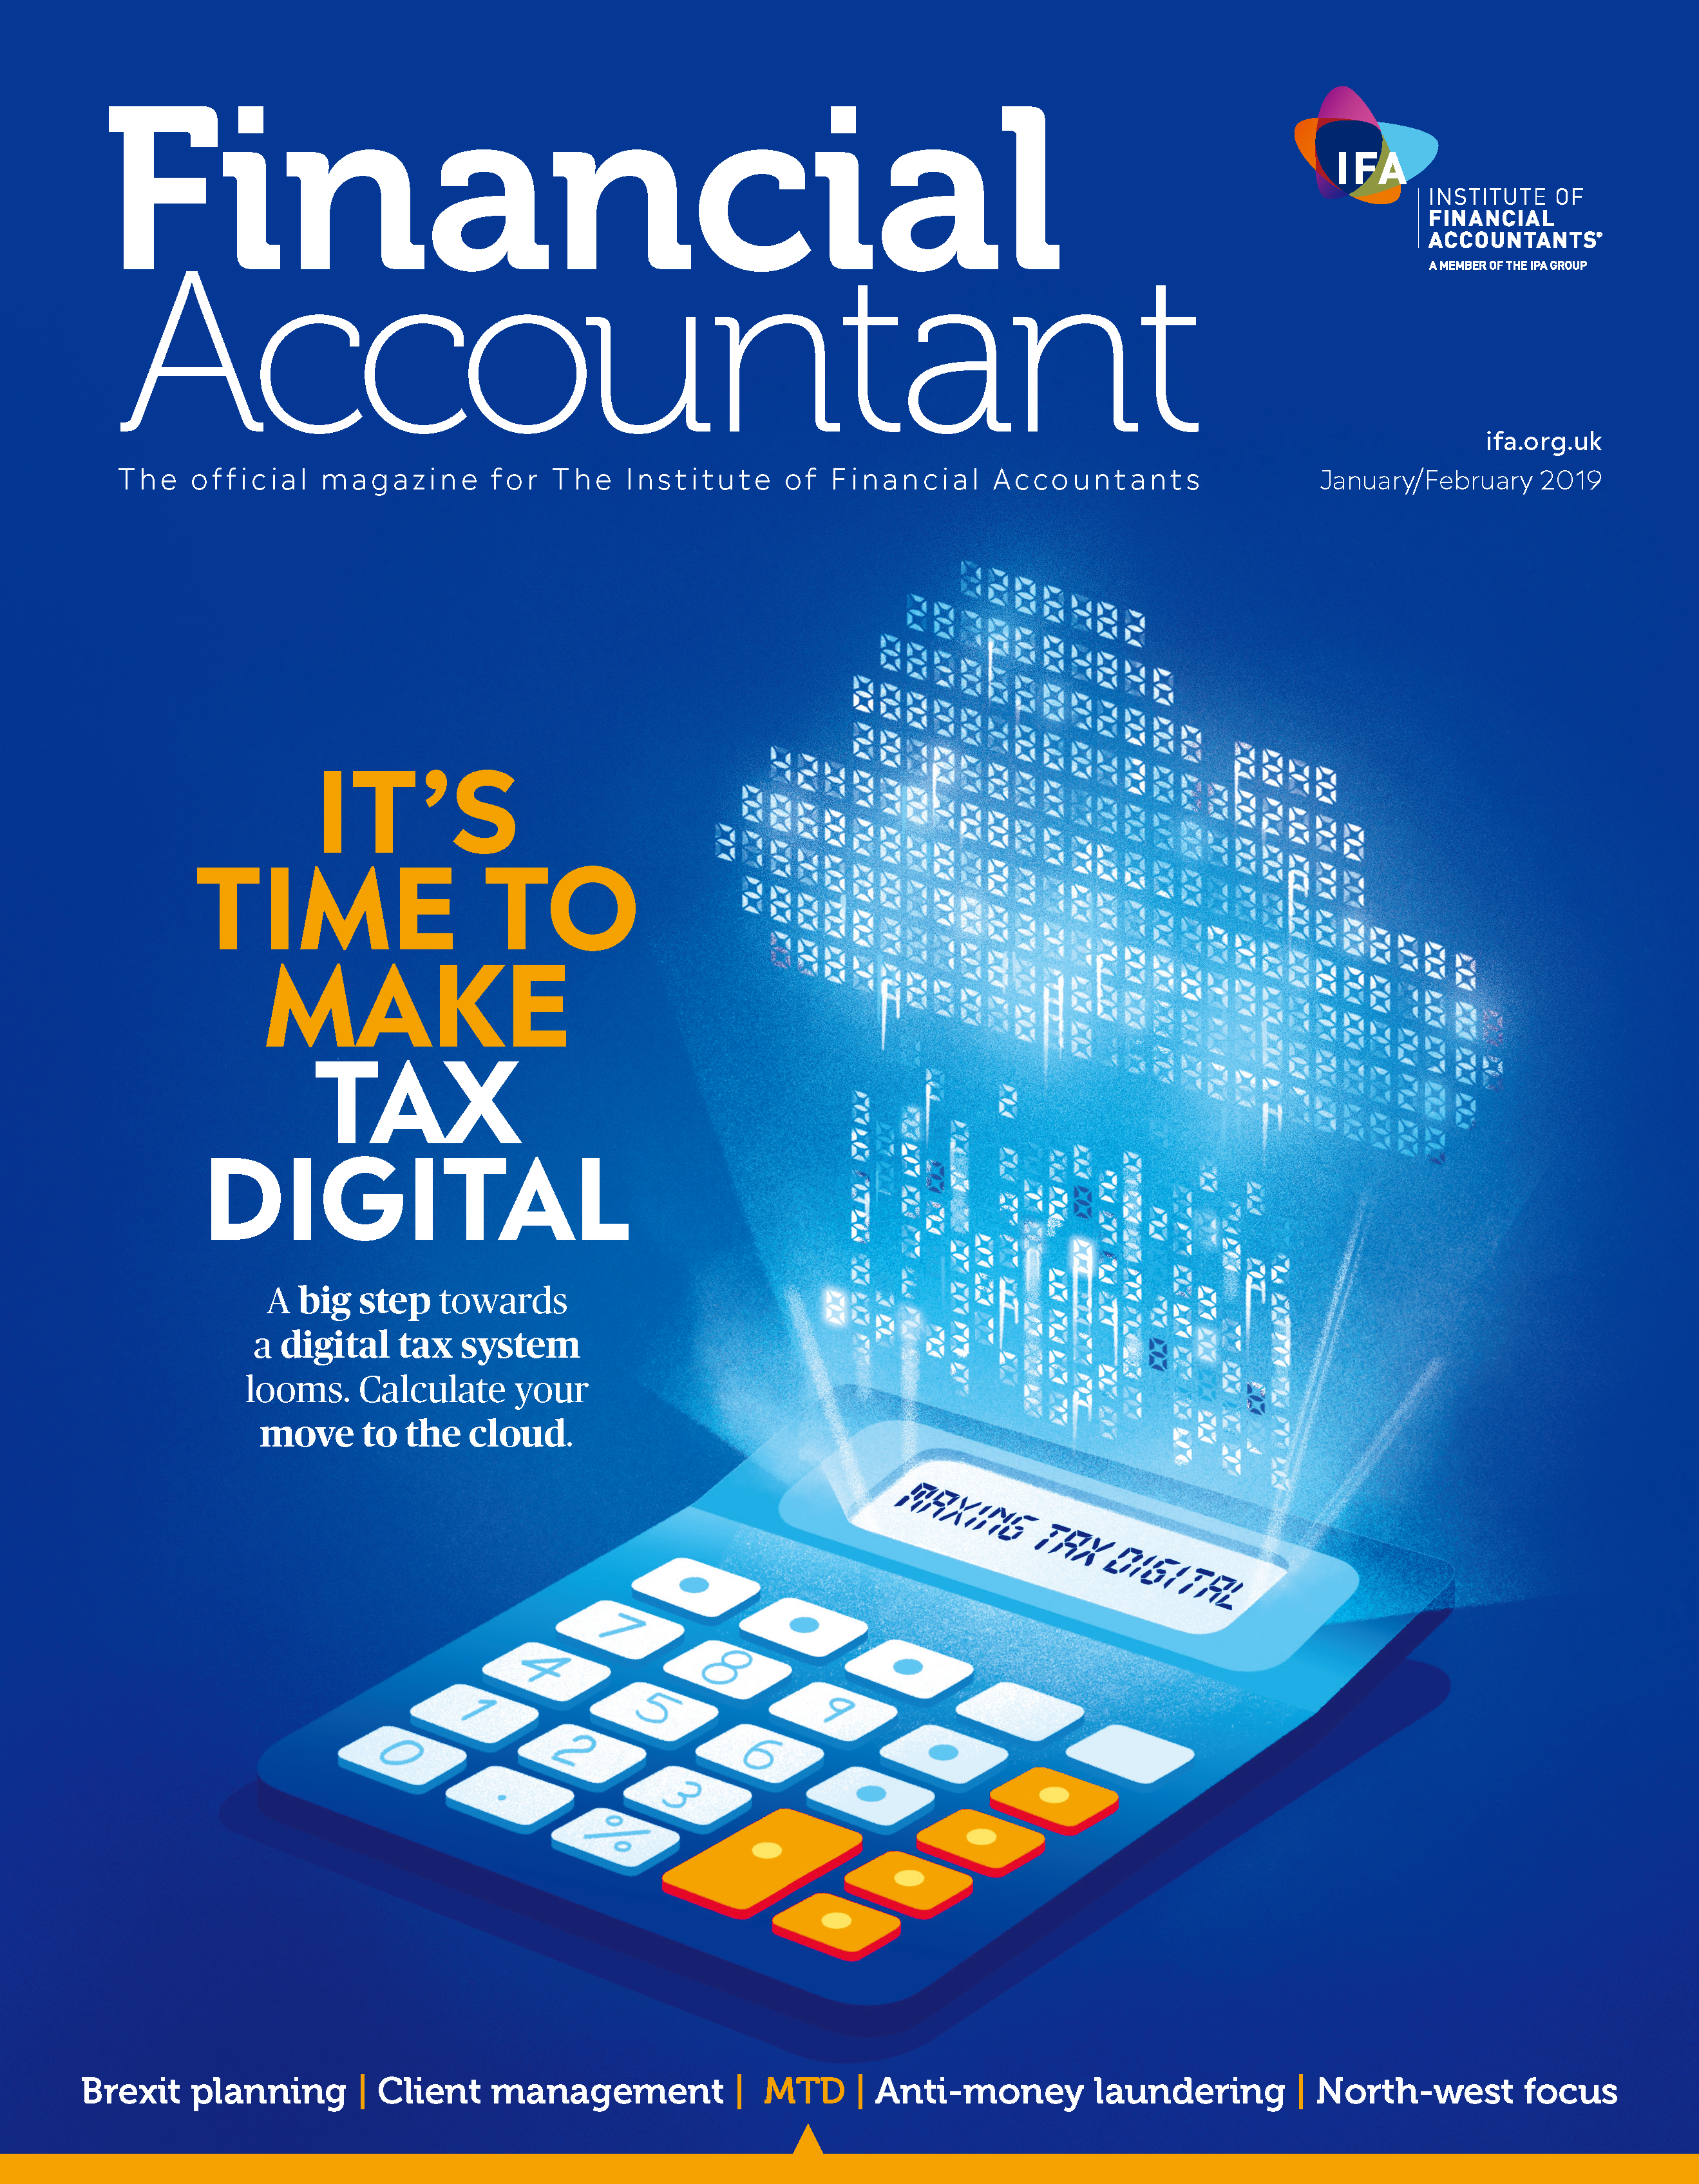 Making tax digital 2019